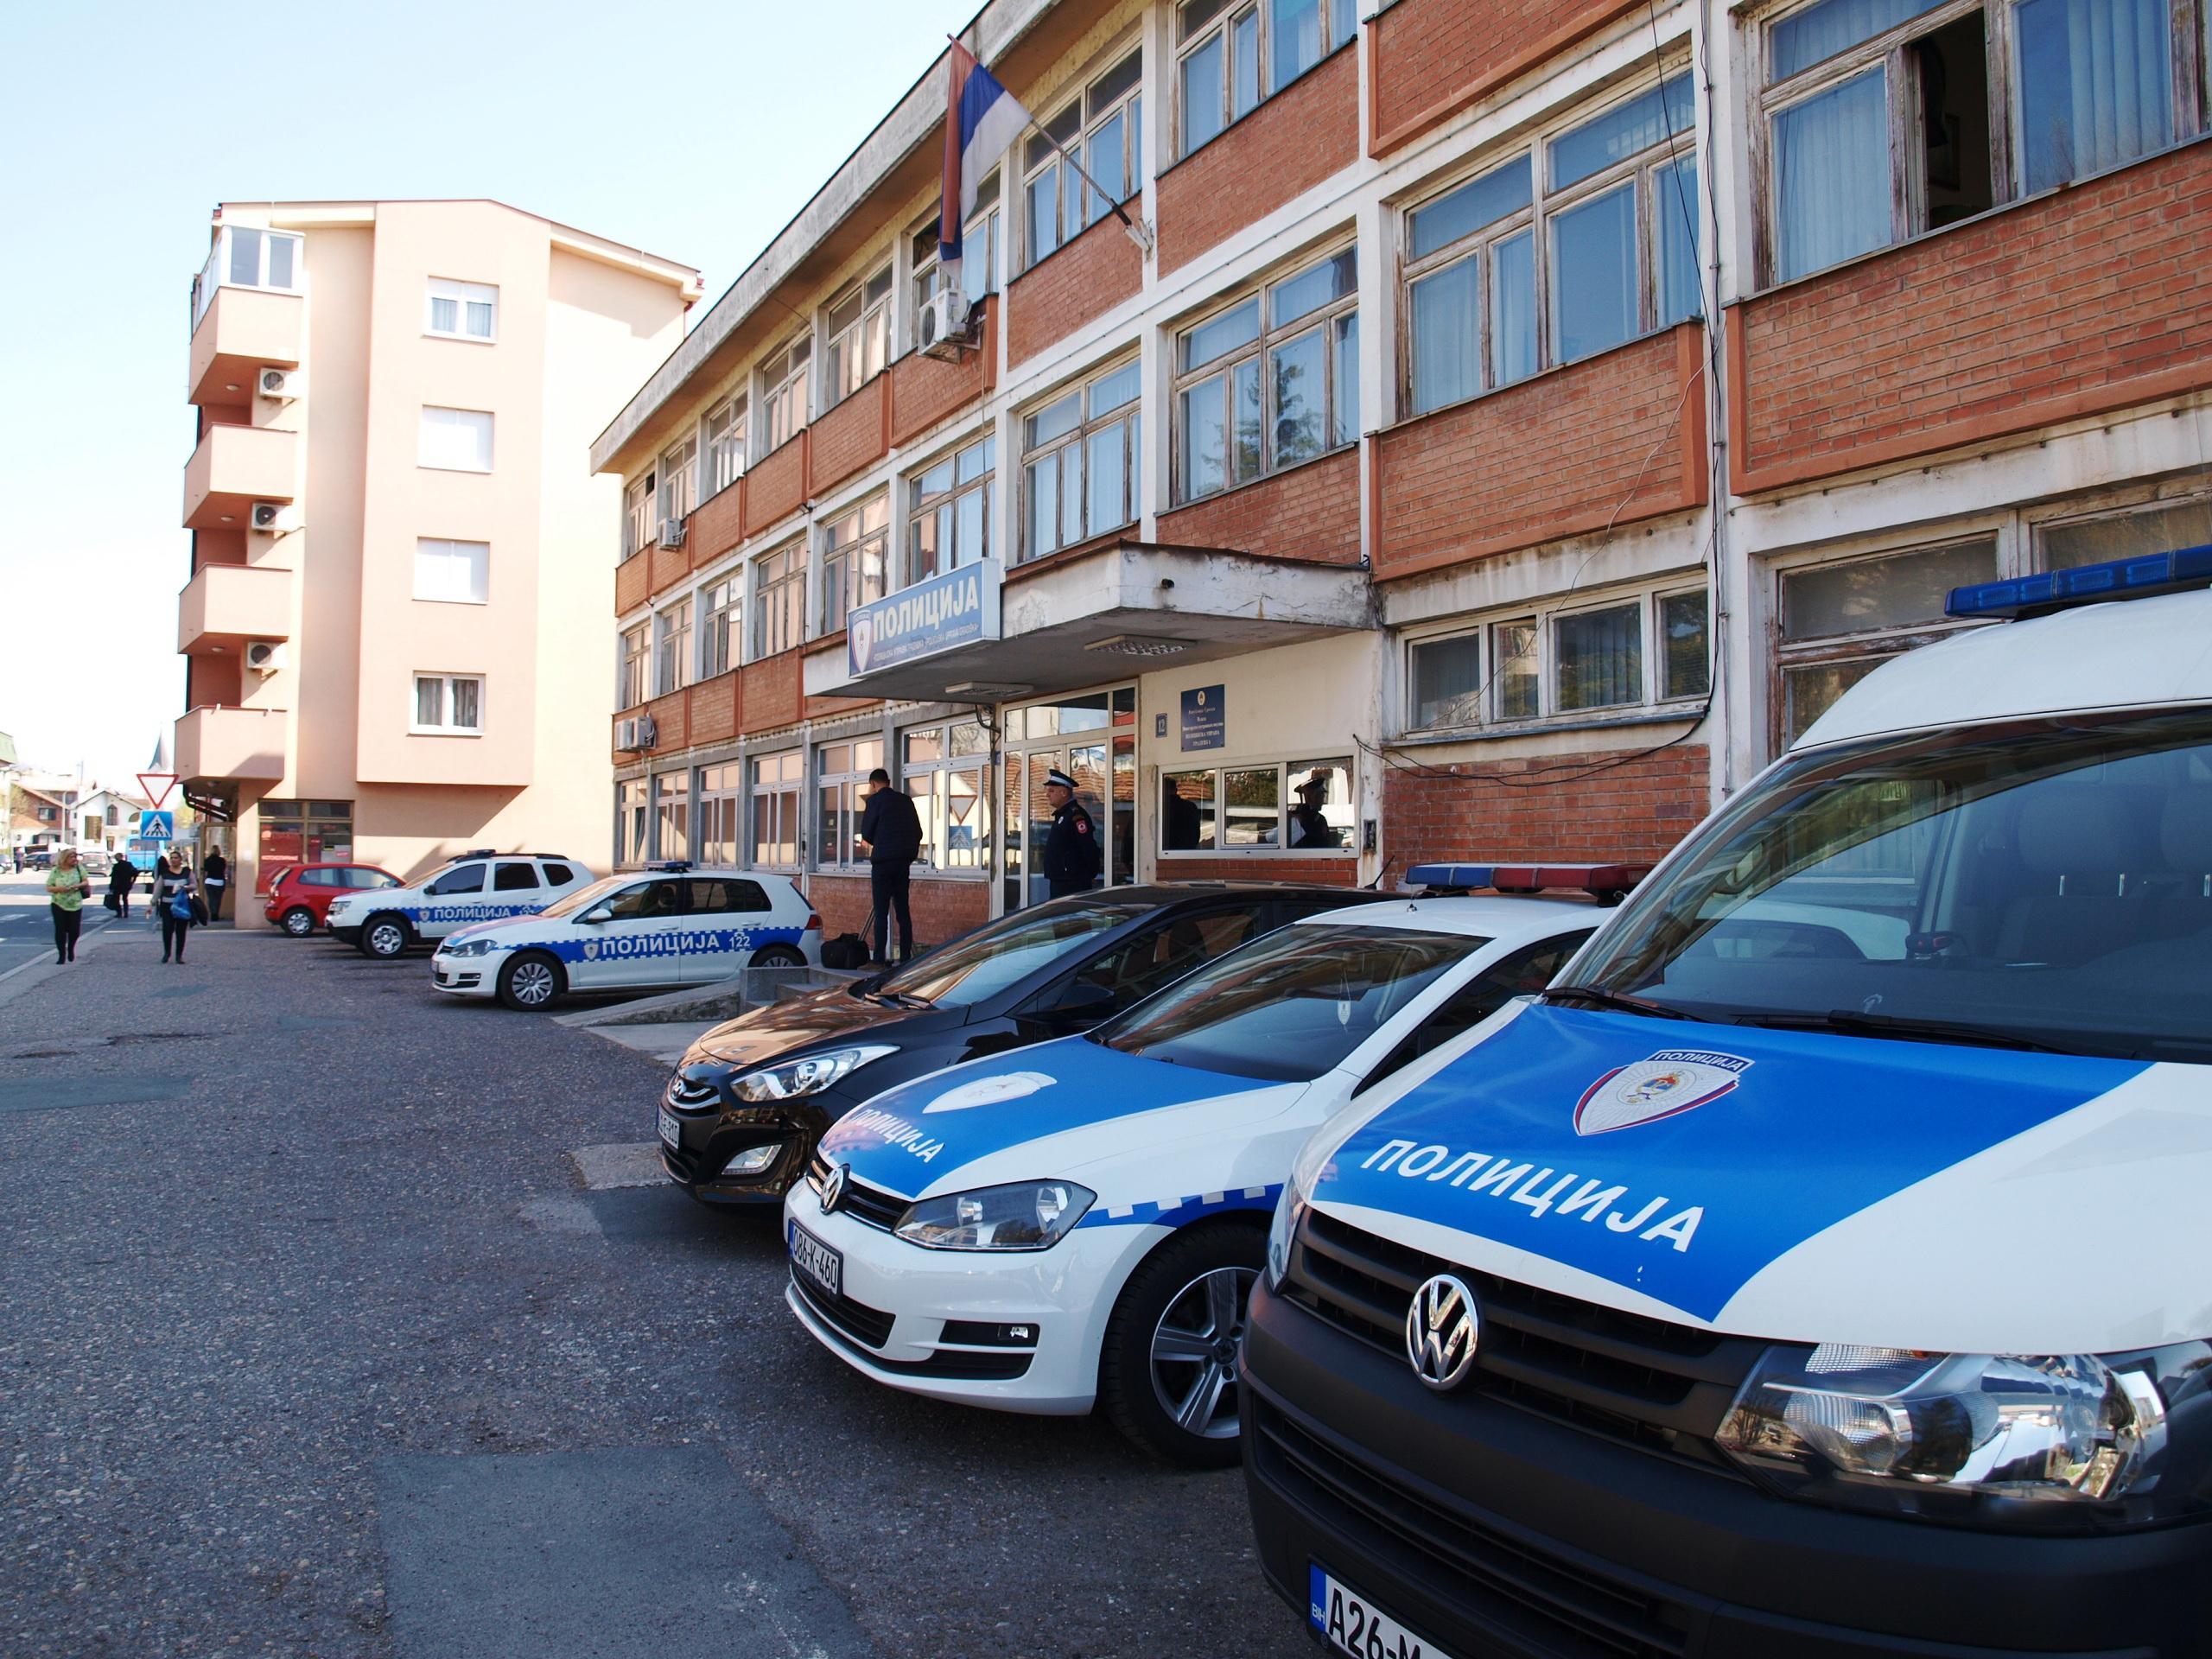 Policija izvršila pretres kuće - Avaz